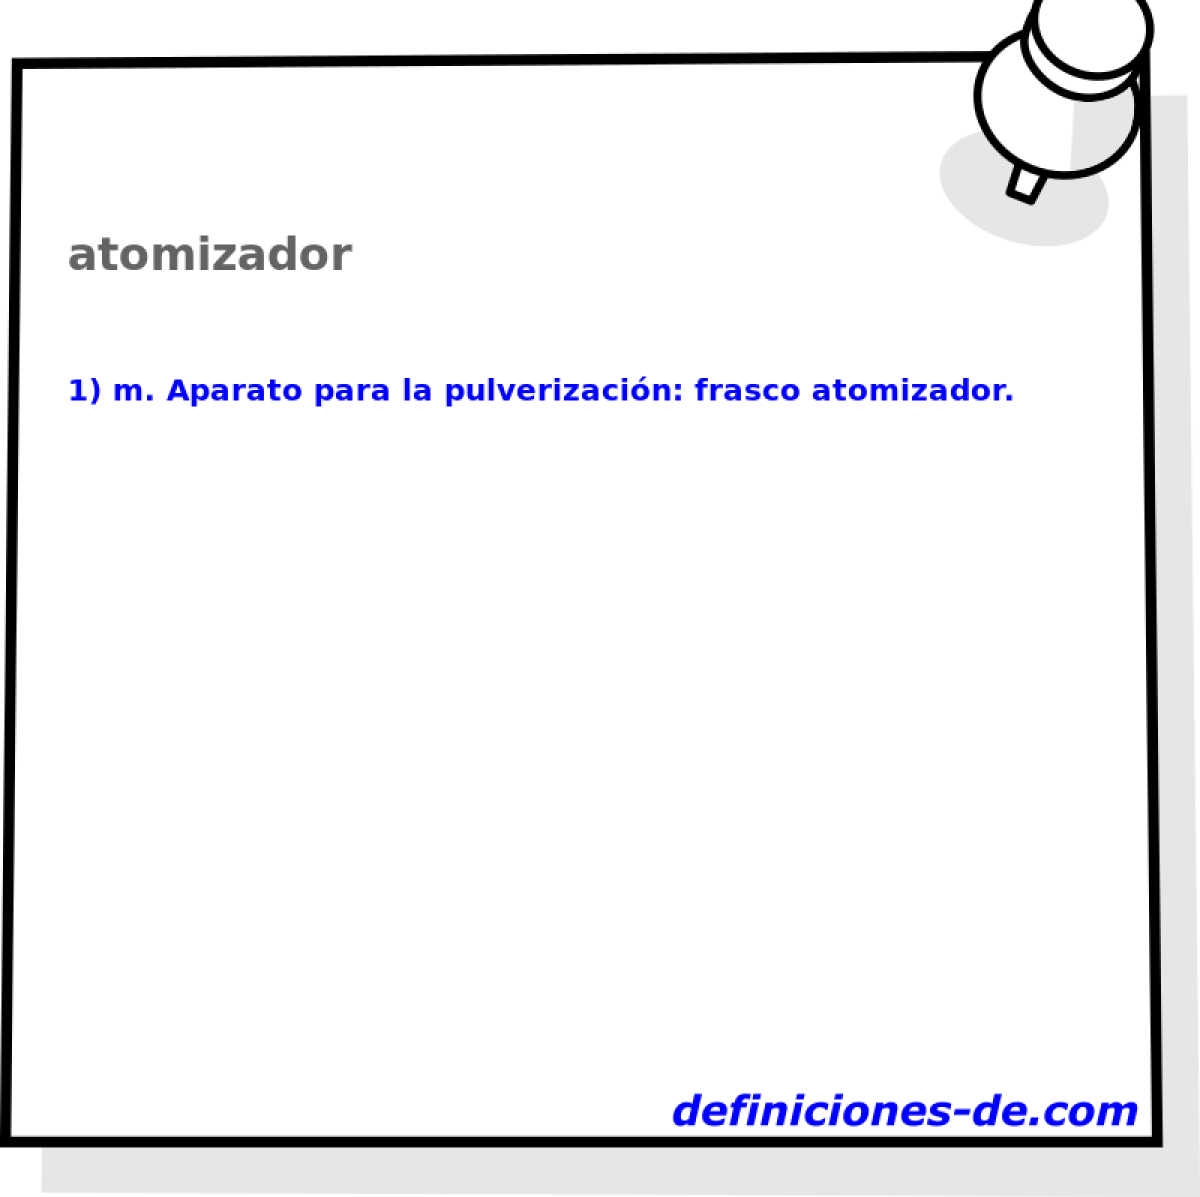 atomizador 